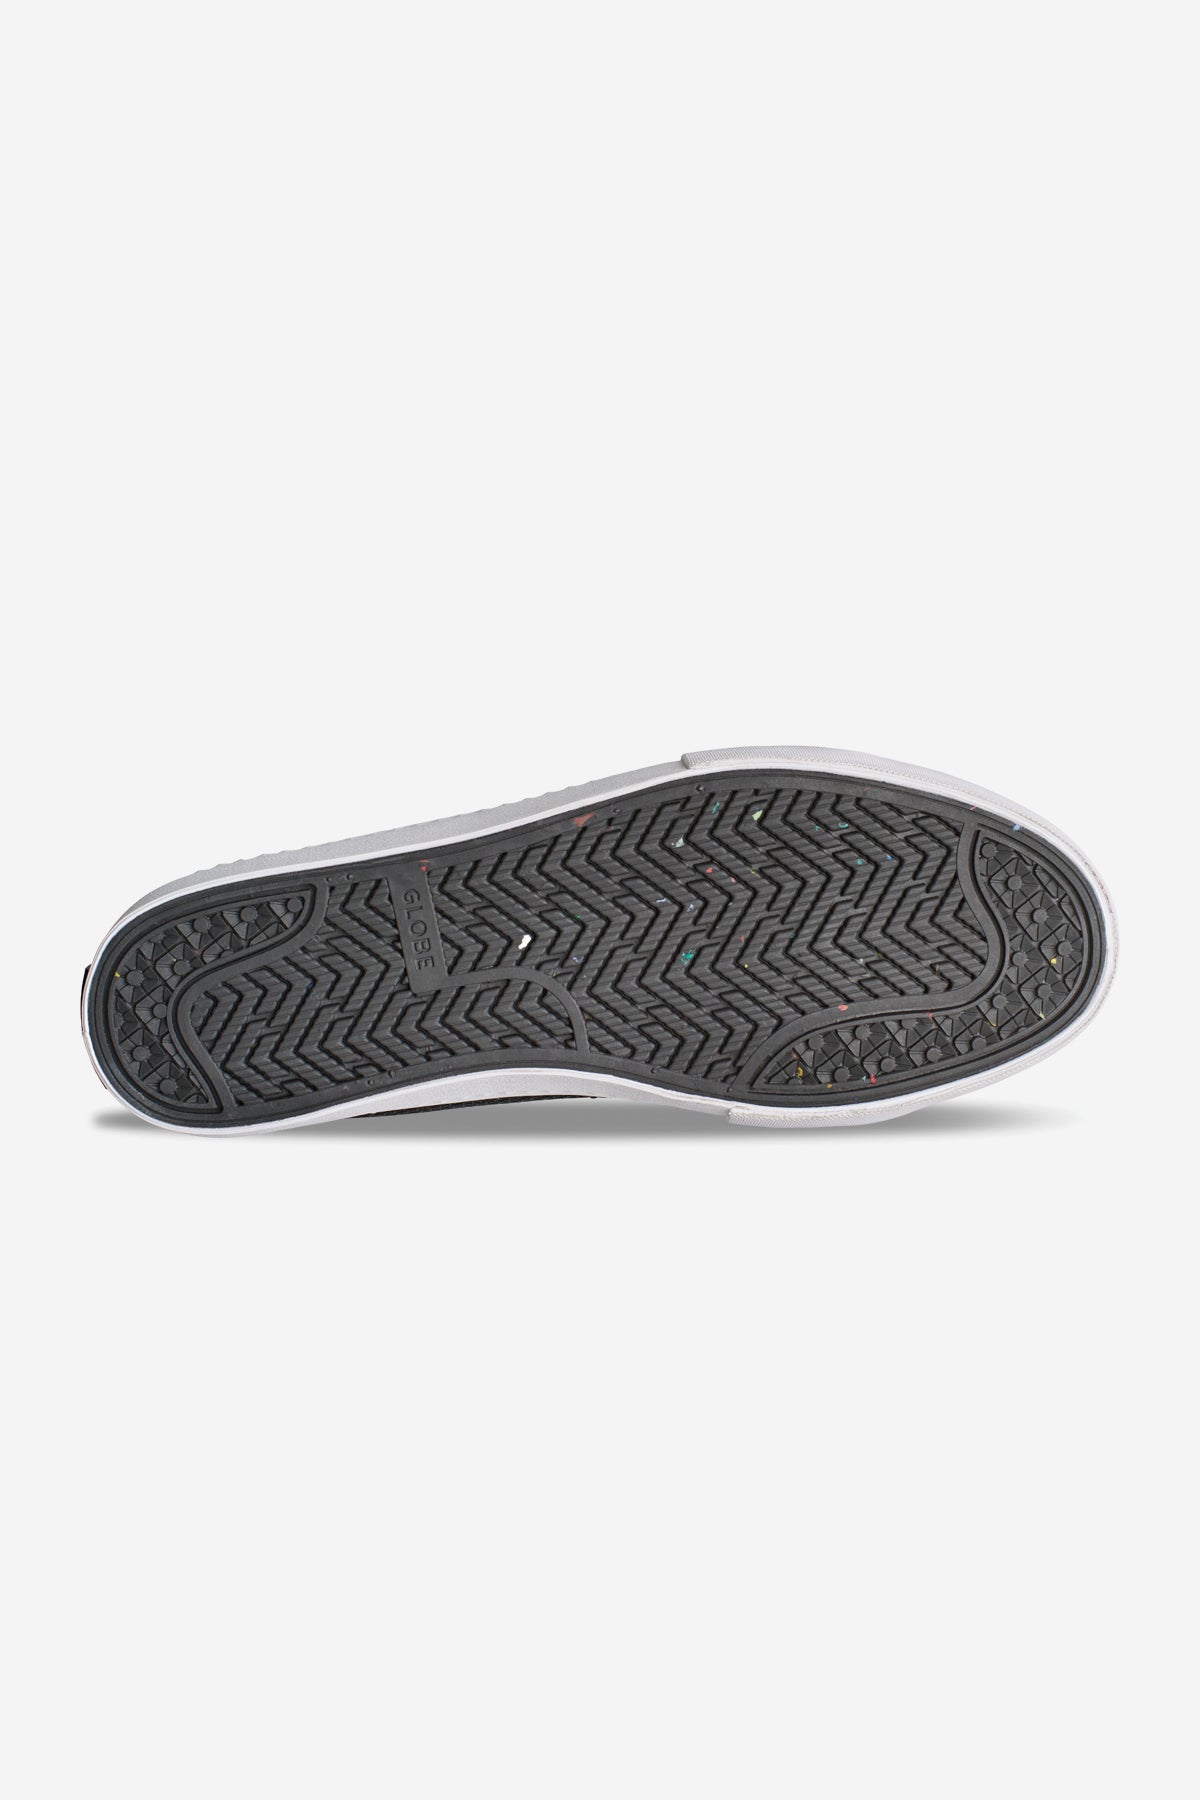 LA Knit Black/White skate shoes